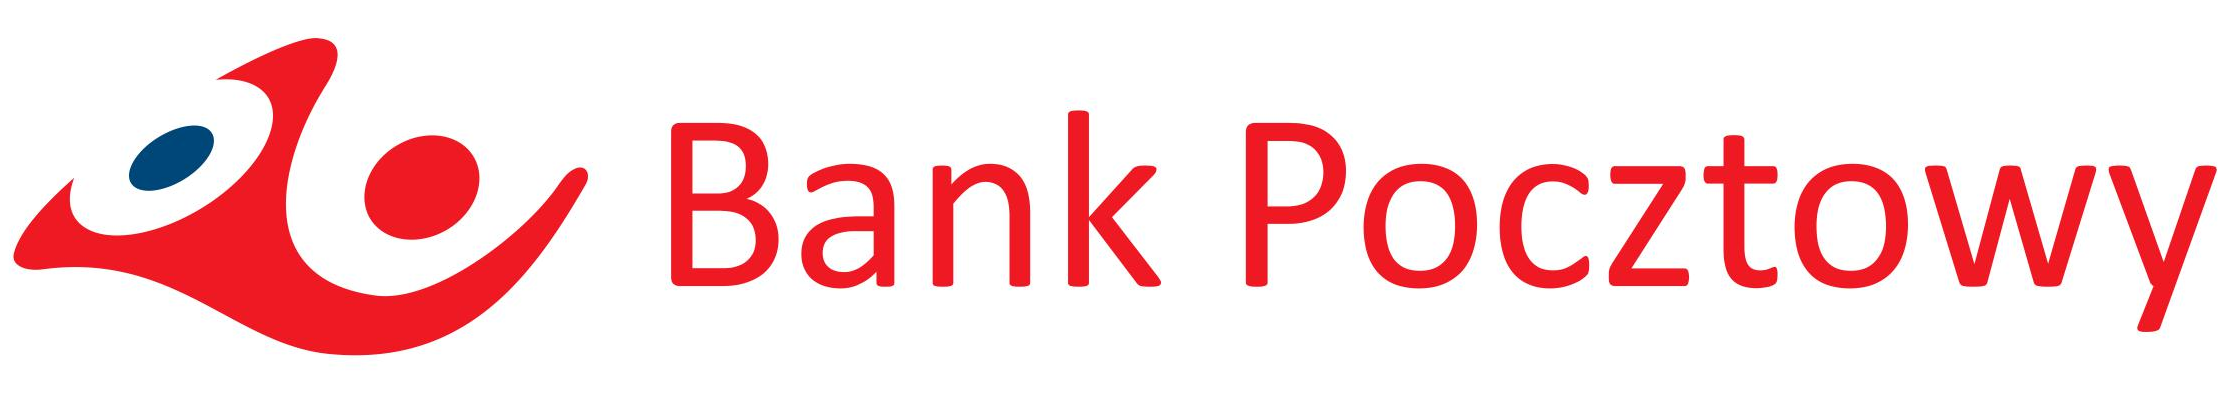 Logotyp Bank Pocztowy